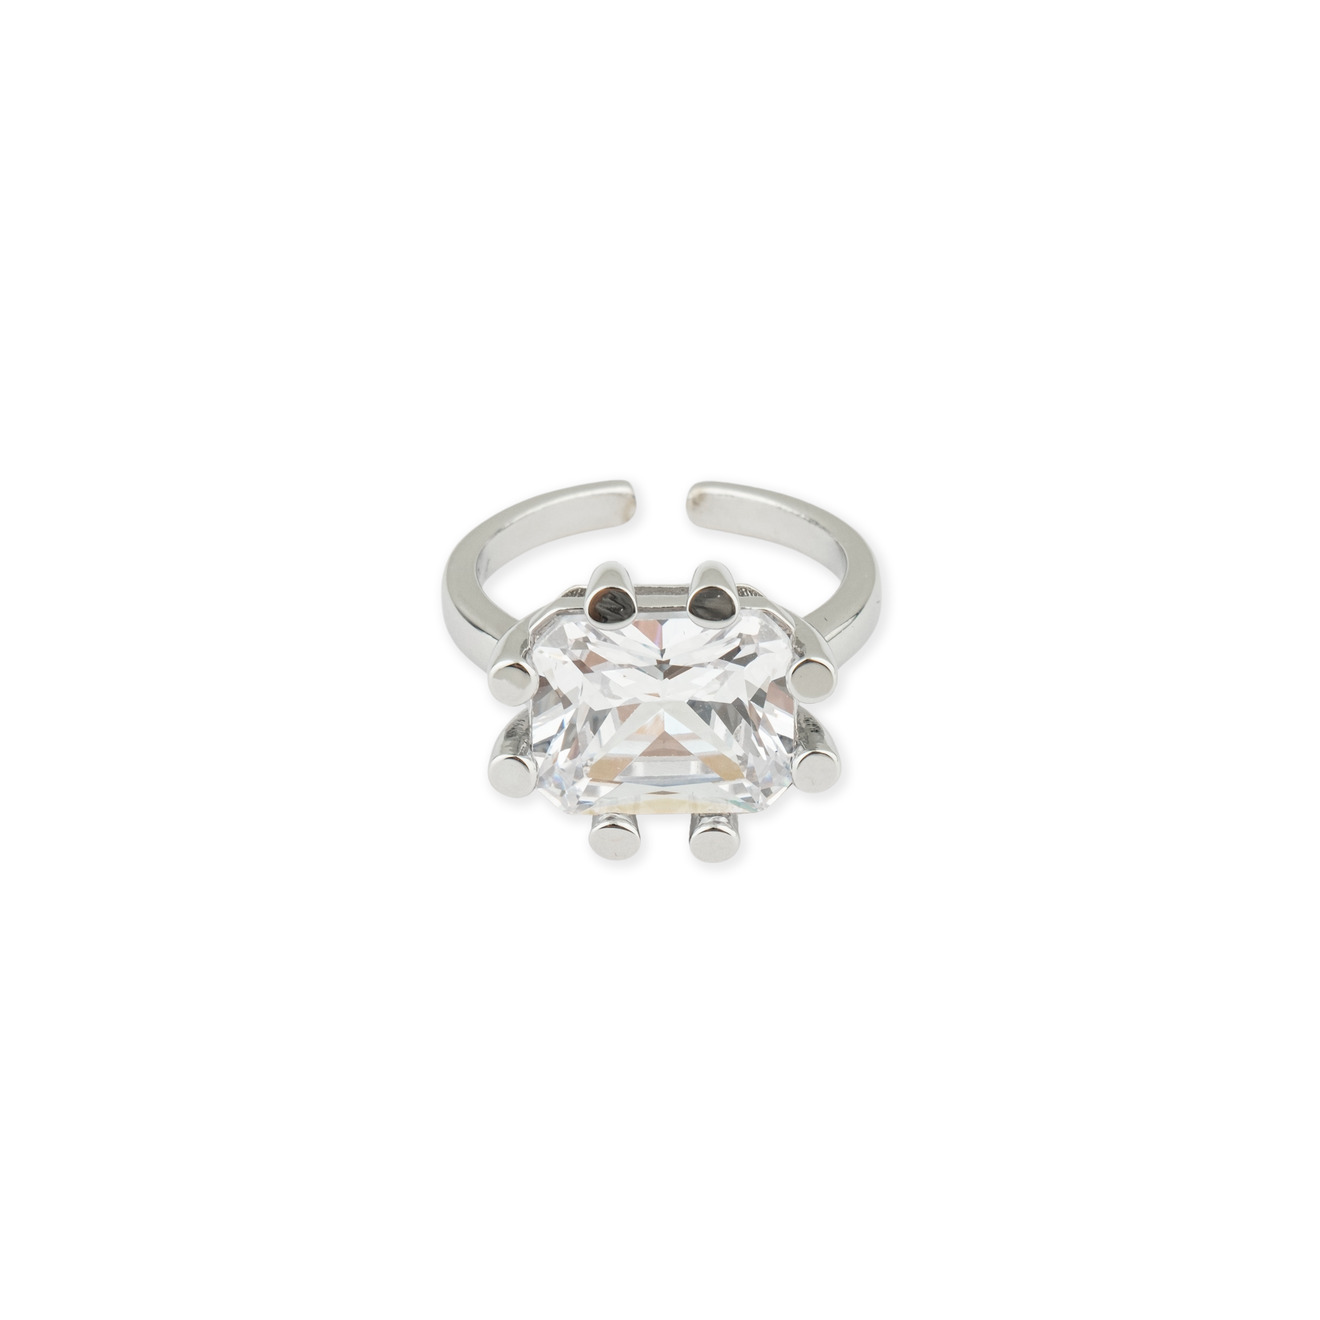 Herald Percy Серебристое кольцо с кристаллом herald percy серебристая цепочка с розовым кристаллом